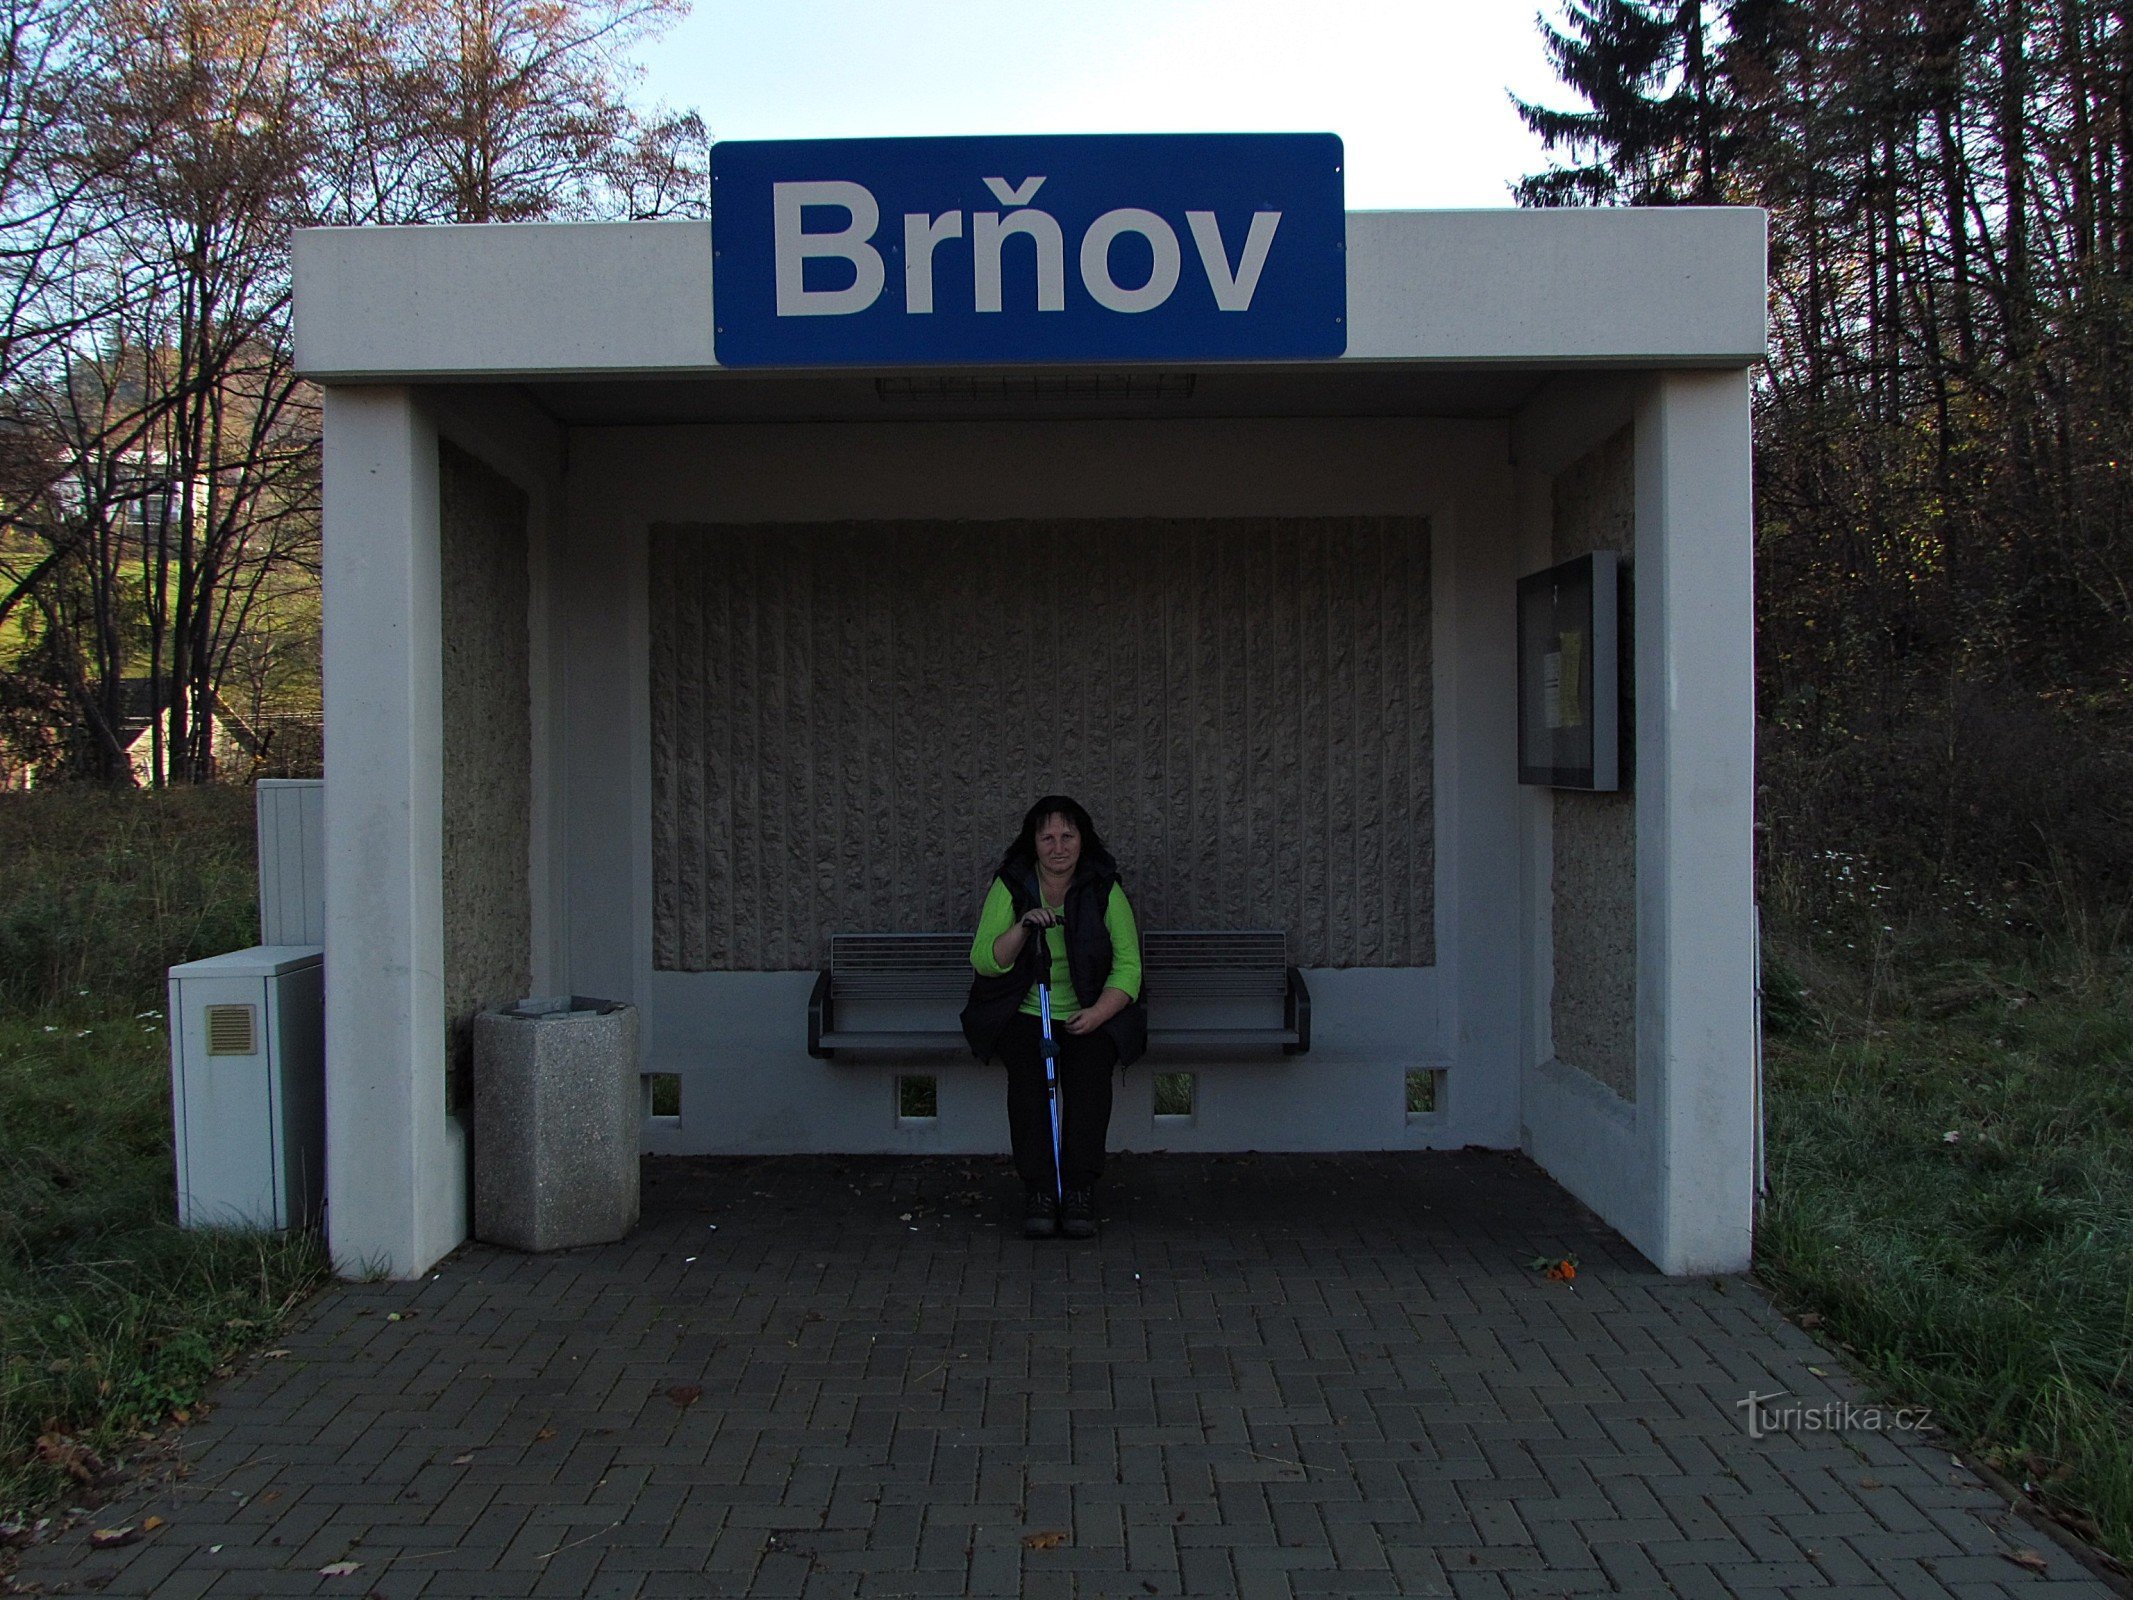 Dworzec kolejowy w Brnie